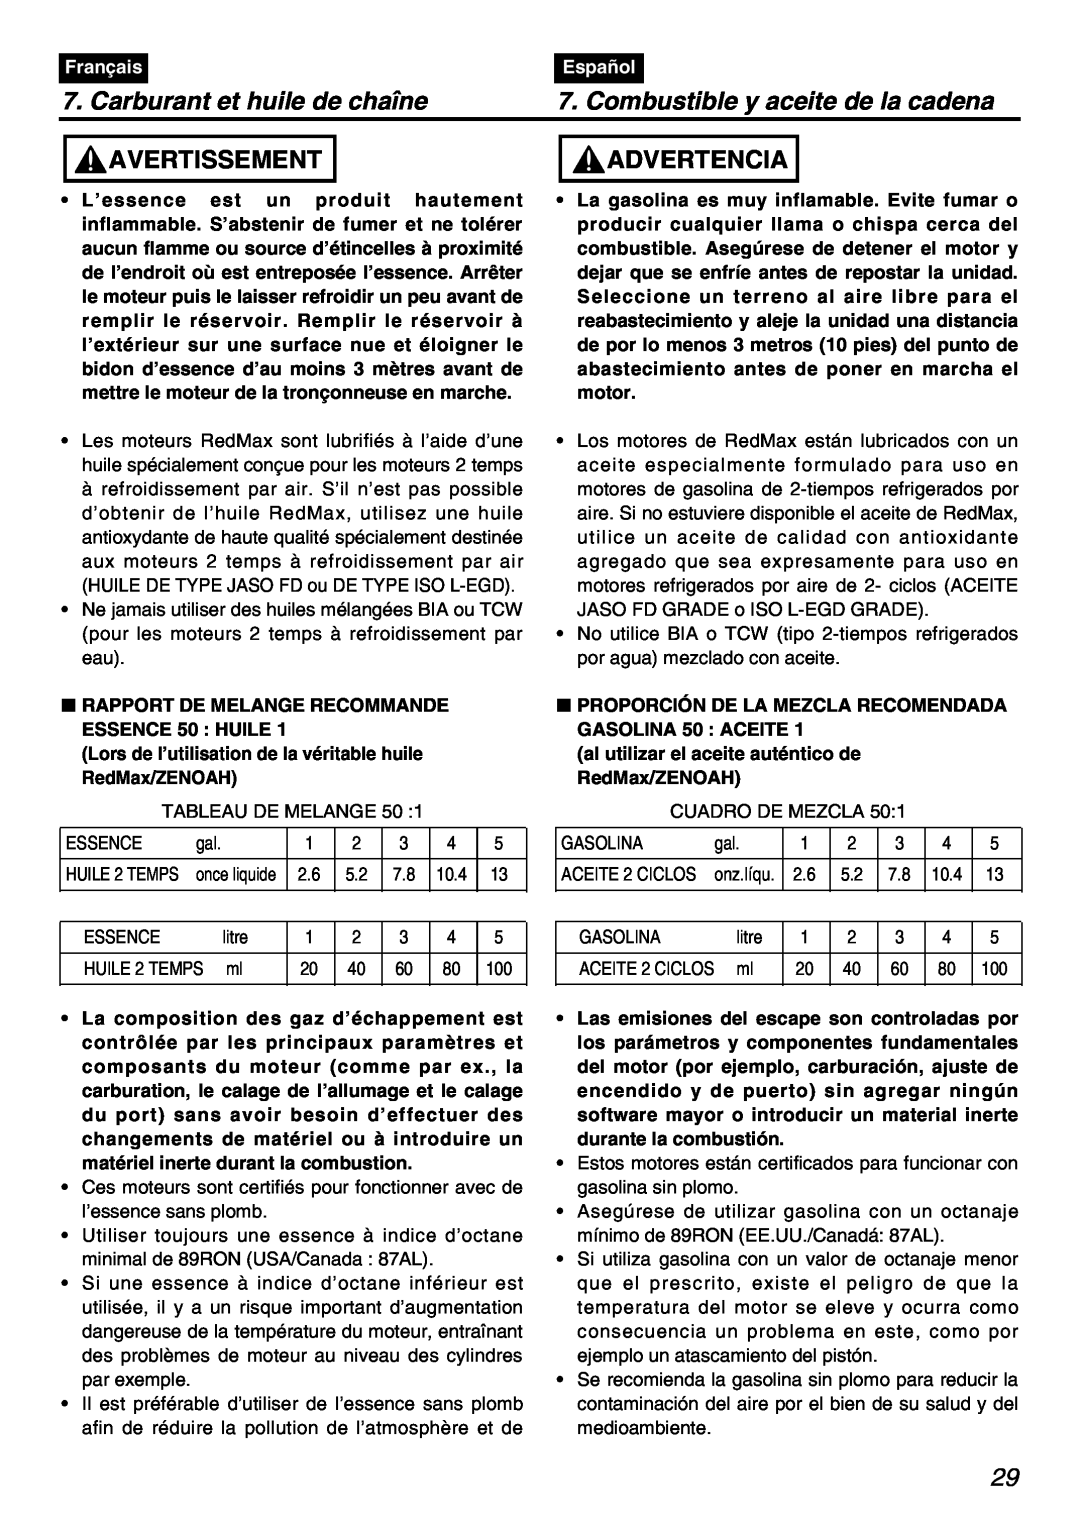 Zenoah PSZ2401 manual Carburant et huile de chaîne, Combustible y aceite de la cadena, Avertissement, Advertencia, Français 